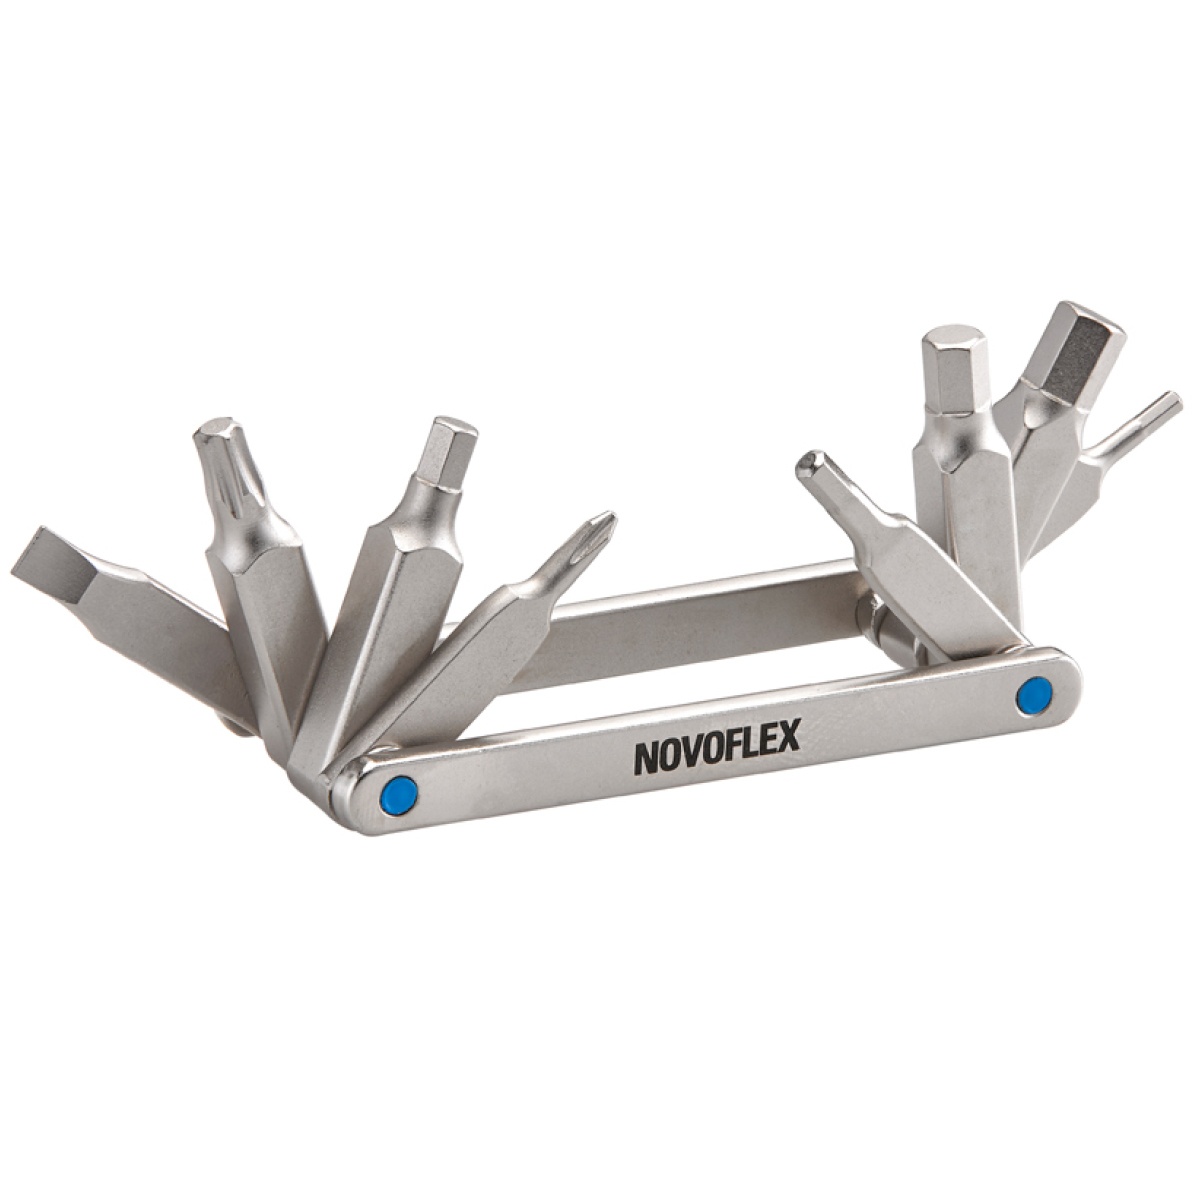 Novoflex Mini-Werkzeug mit 8 Funktionen